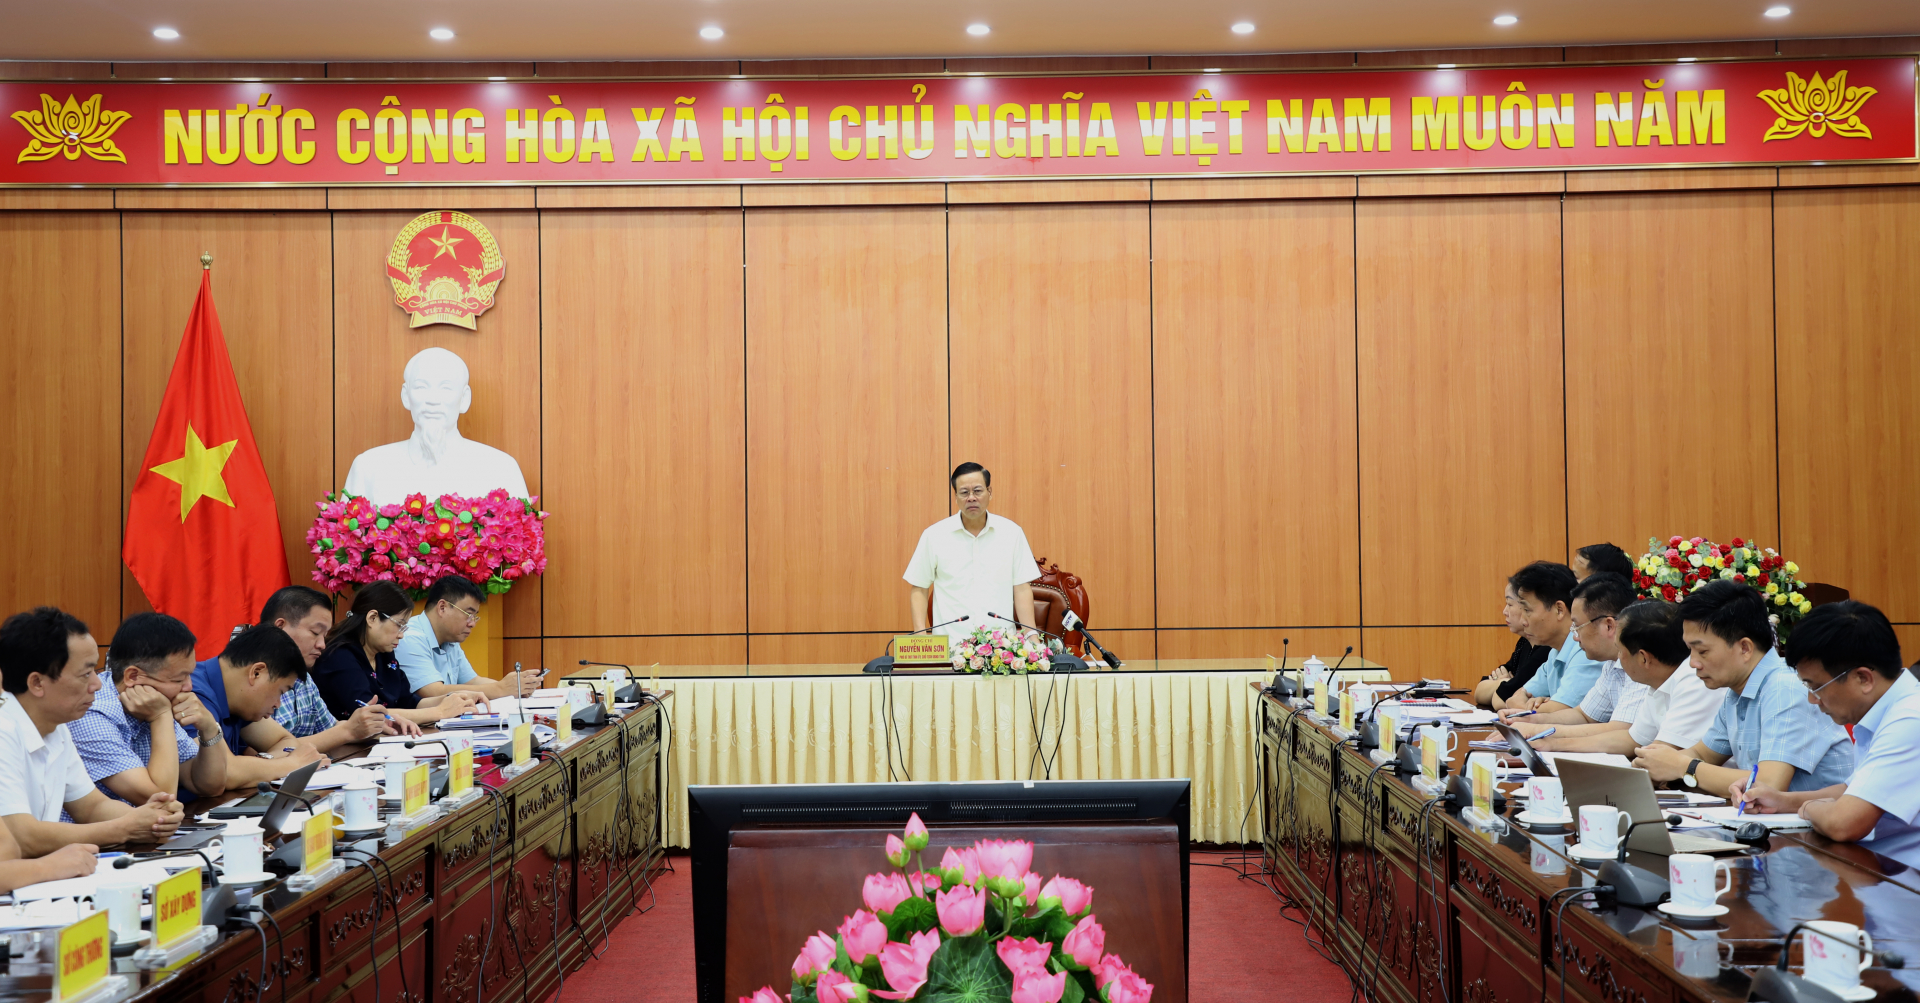 Chủ tịch UBND tỉnh Nguyễn Văn Sơn chủ trì buổi làm việc.